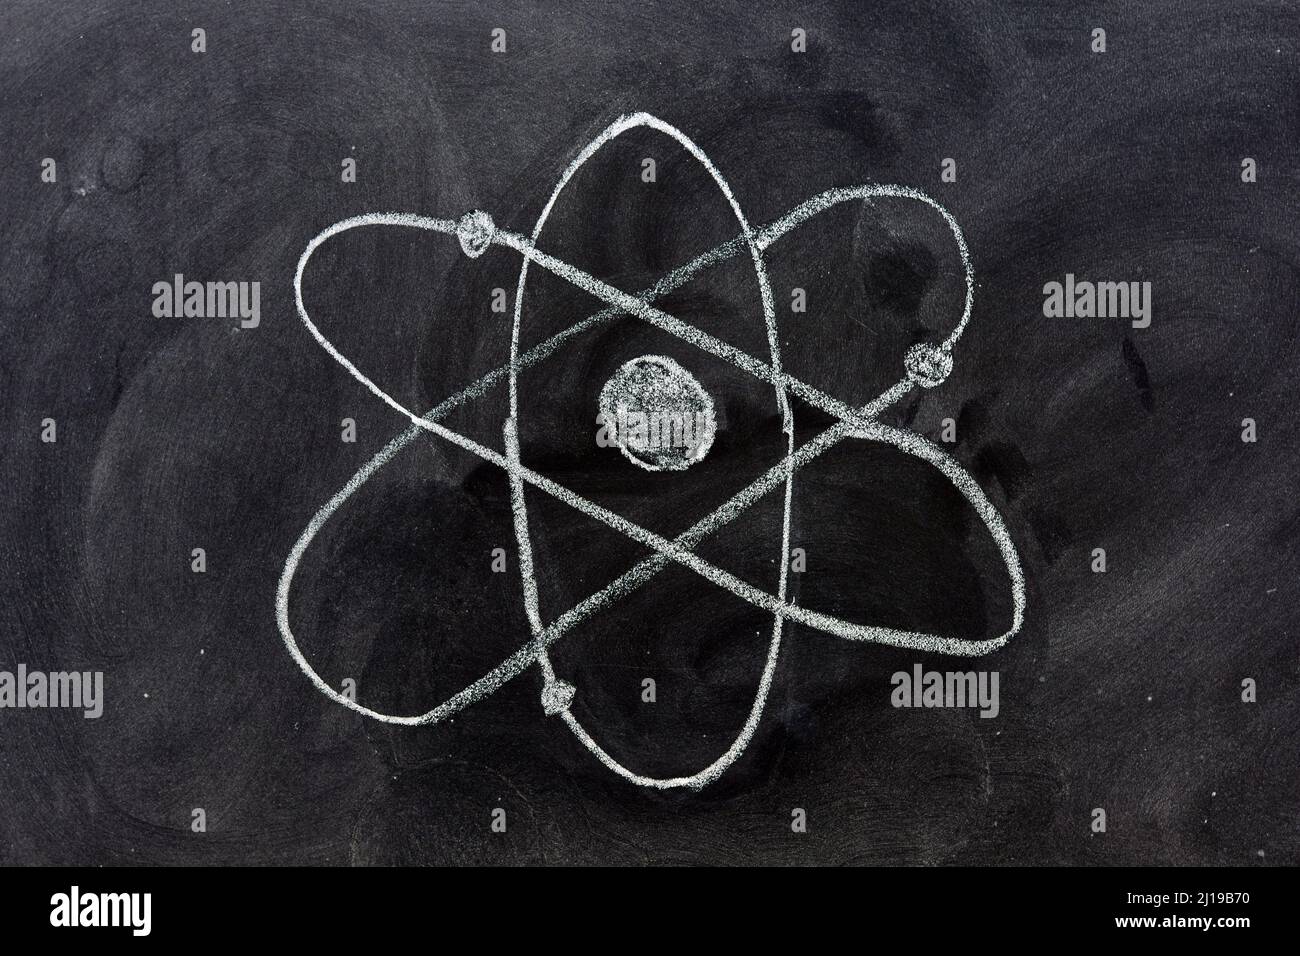 símbolo del átomo dibujado con tiza en una pizarra Stockfoto